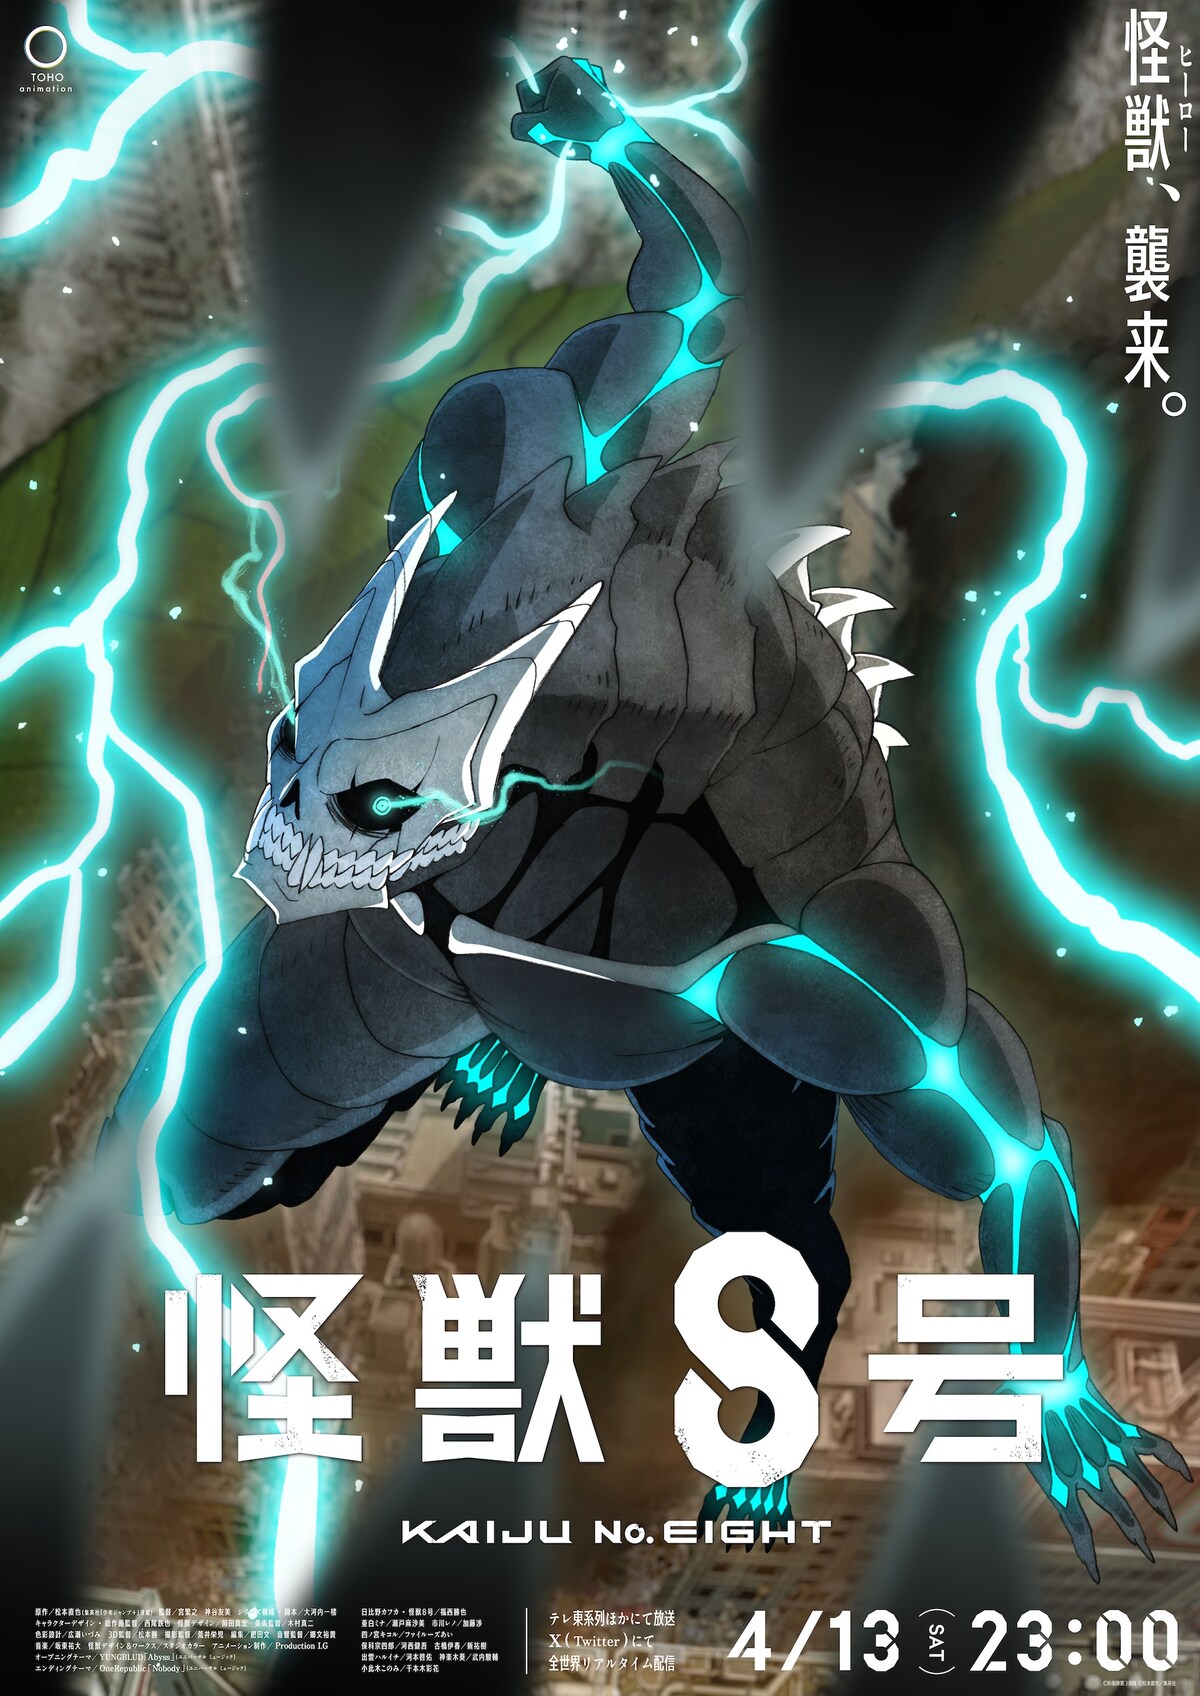 hình ảnh chủ đạo mới của kaiju 8